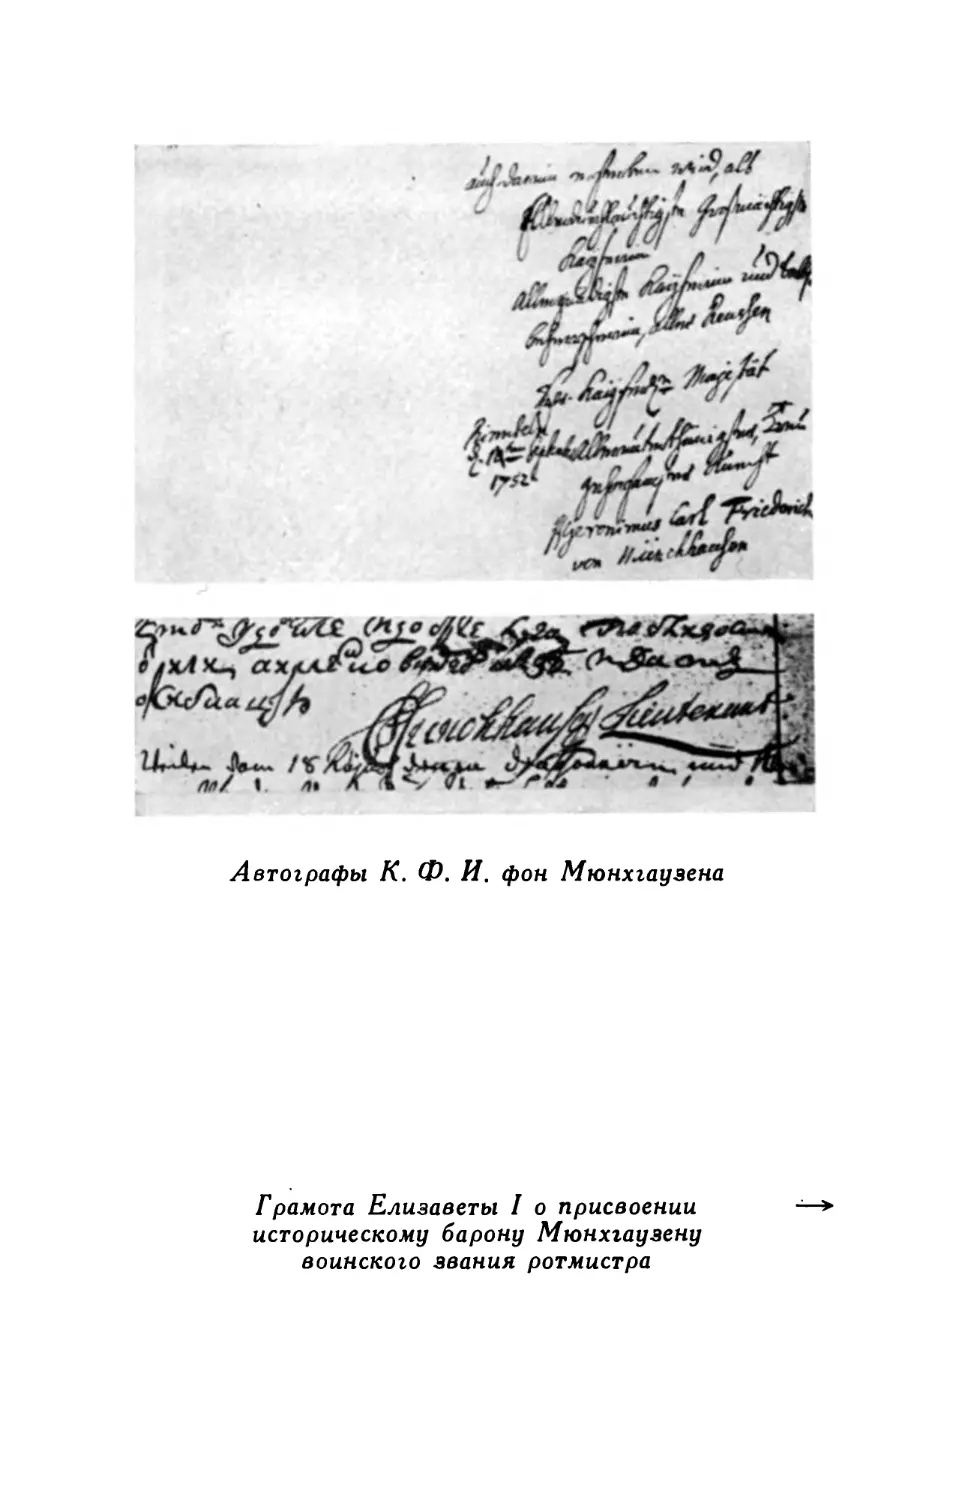 Автографы К.Ф.И. фон Мюнхгаузена